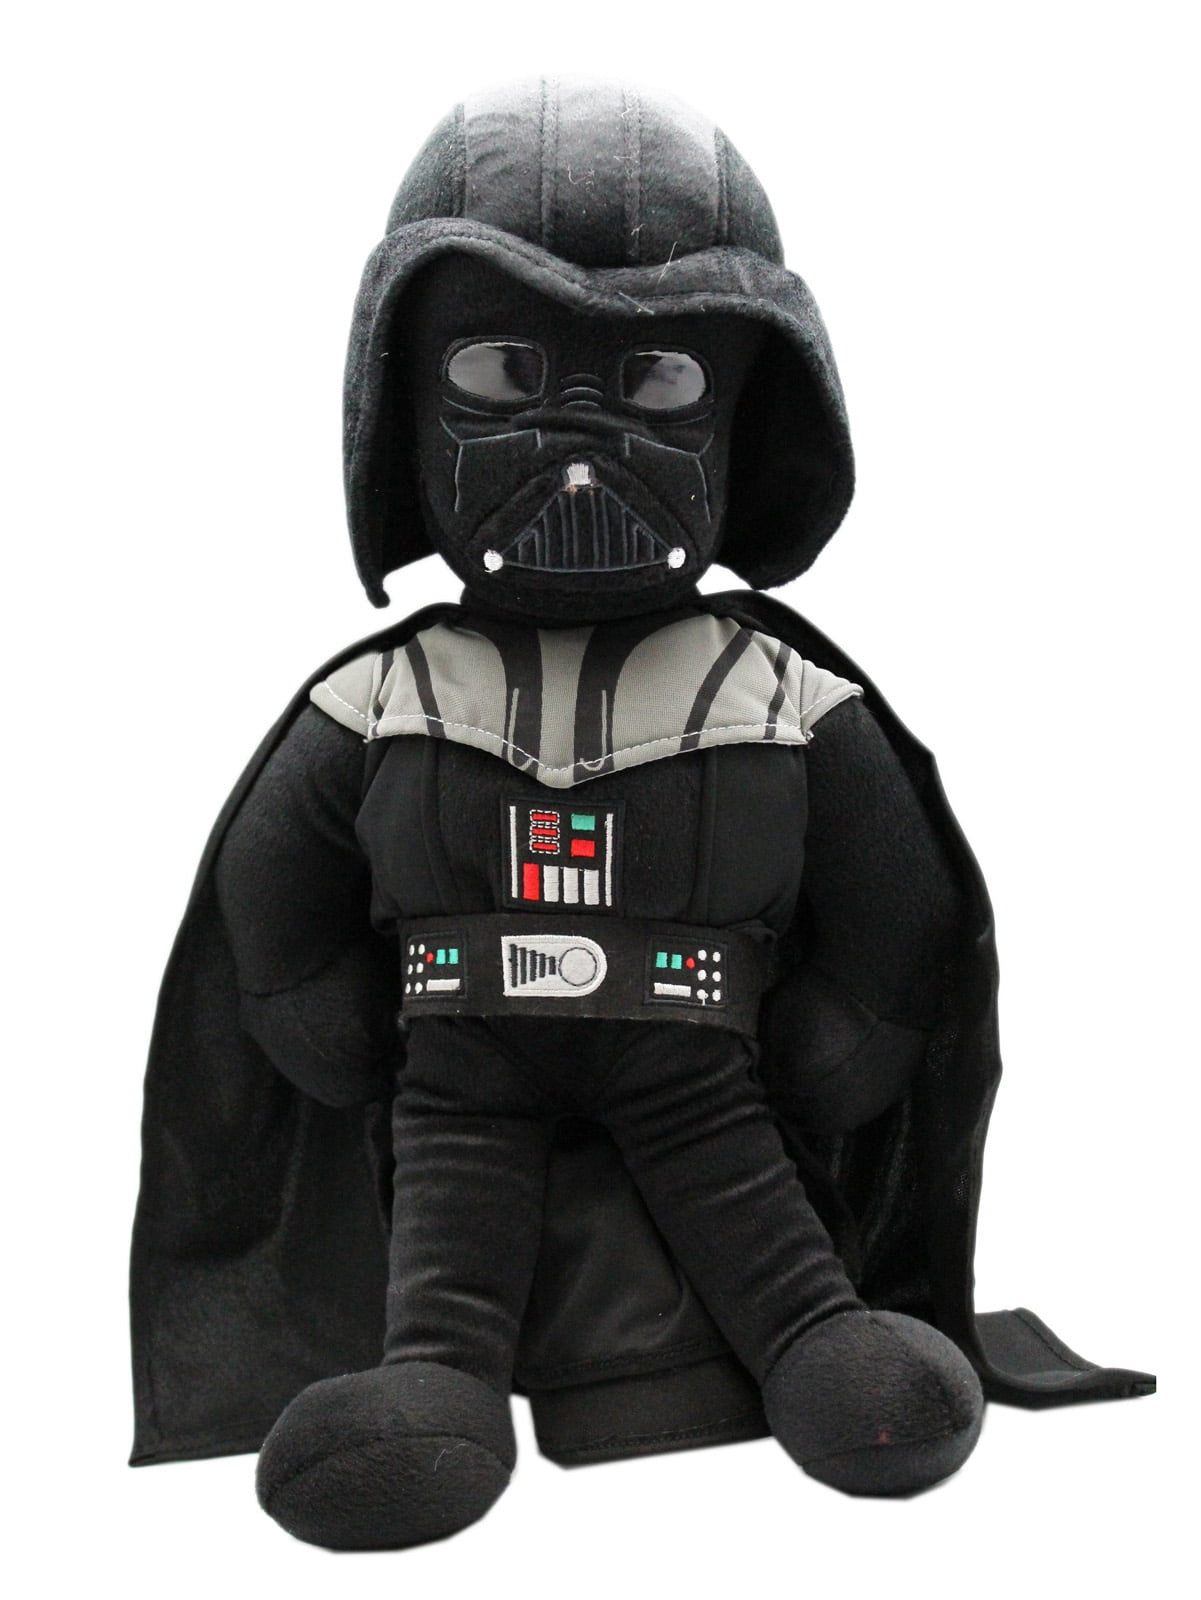 Takara Tomy Arts Star Wars Darth Vader Sitting  Plush Doll Chokkorisan H:10cm 